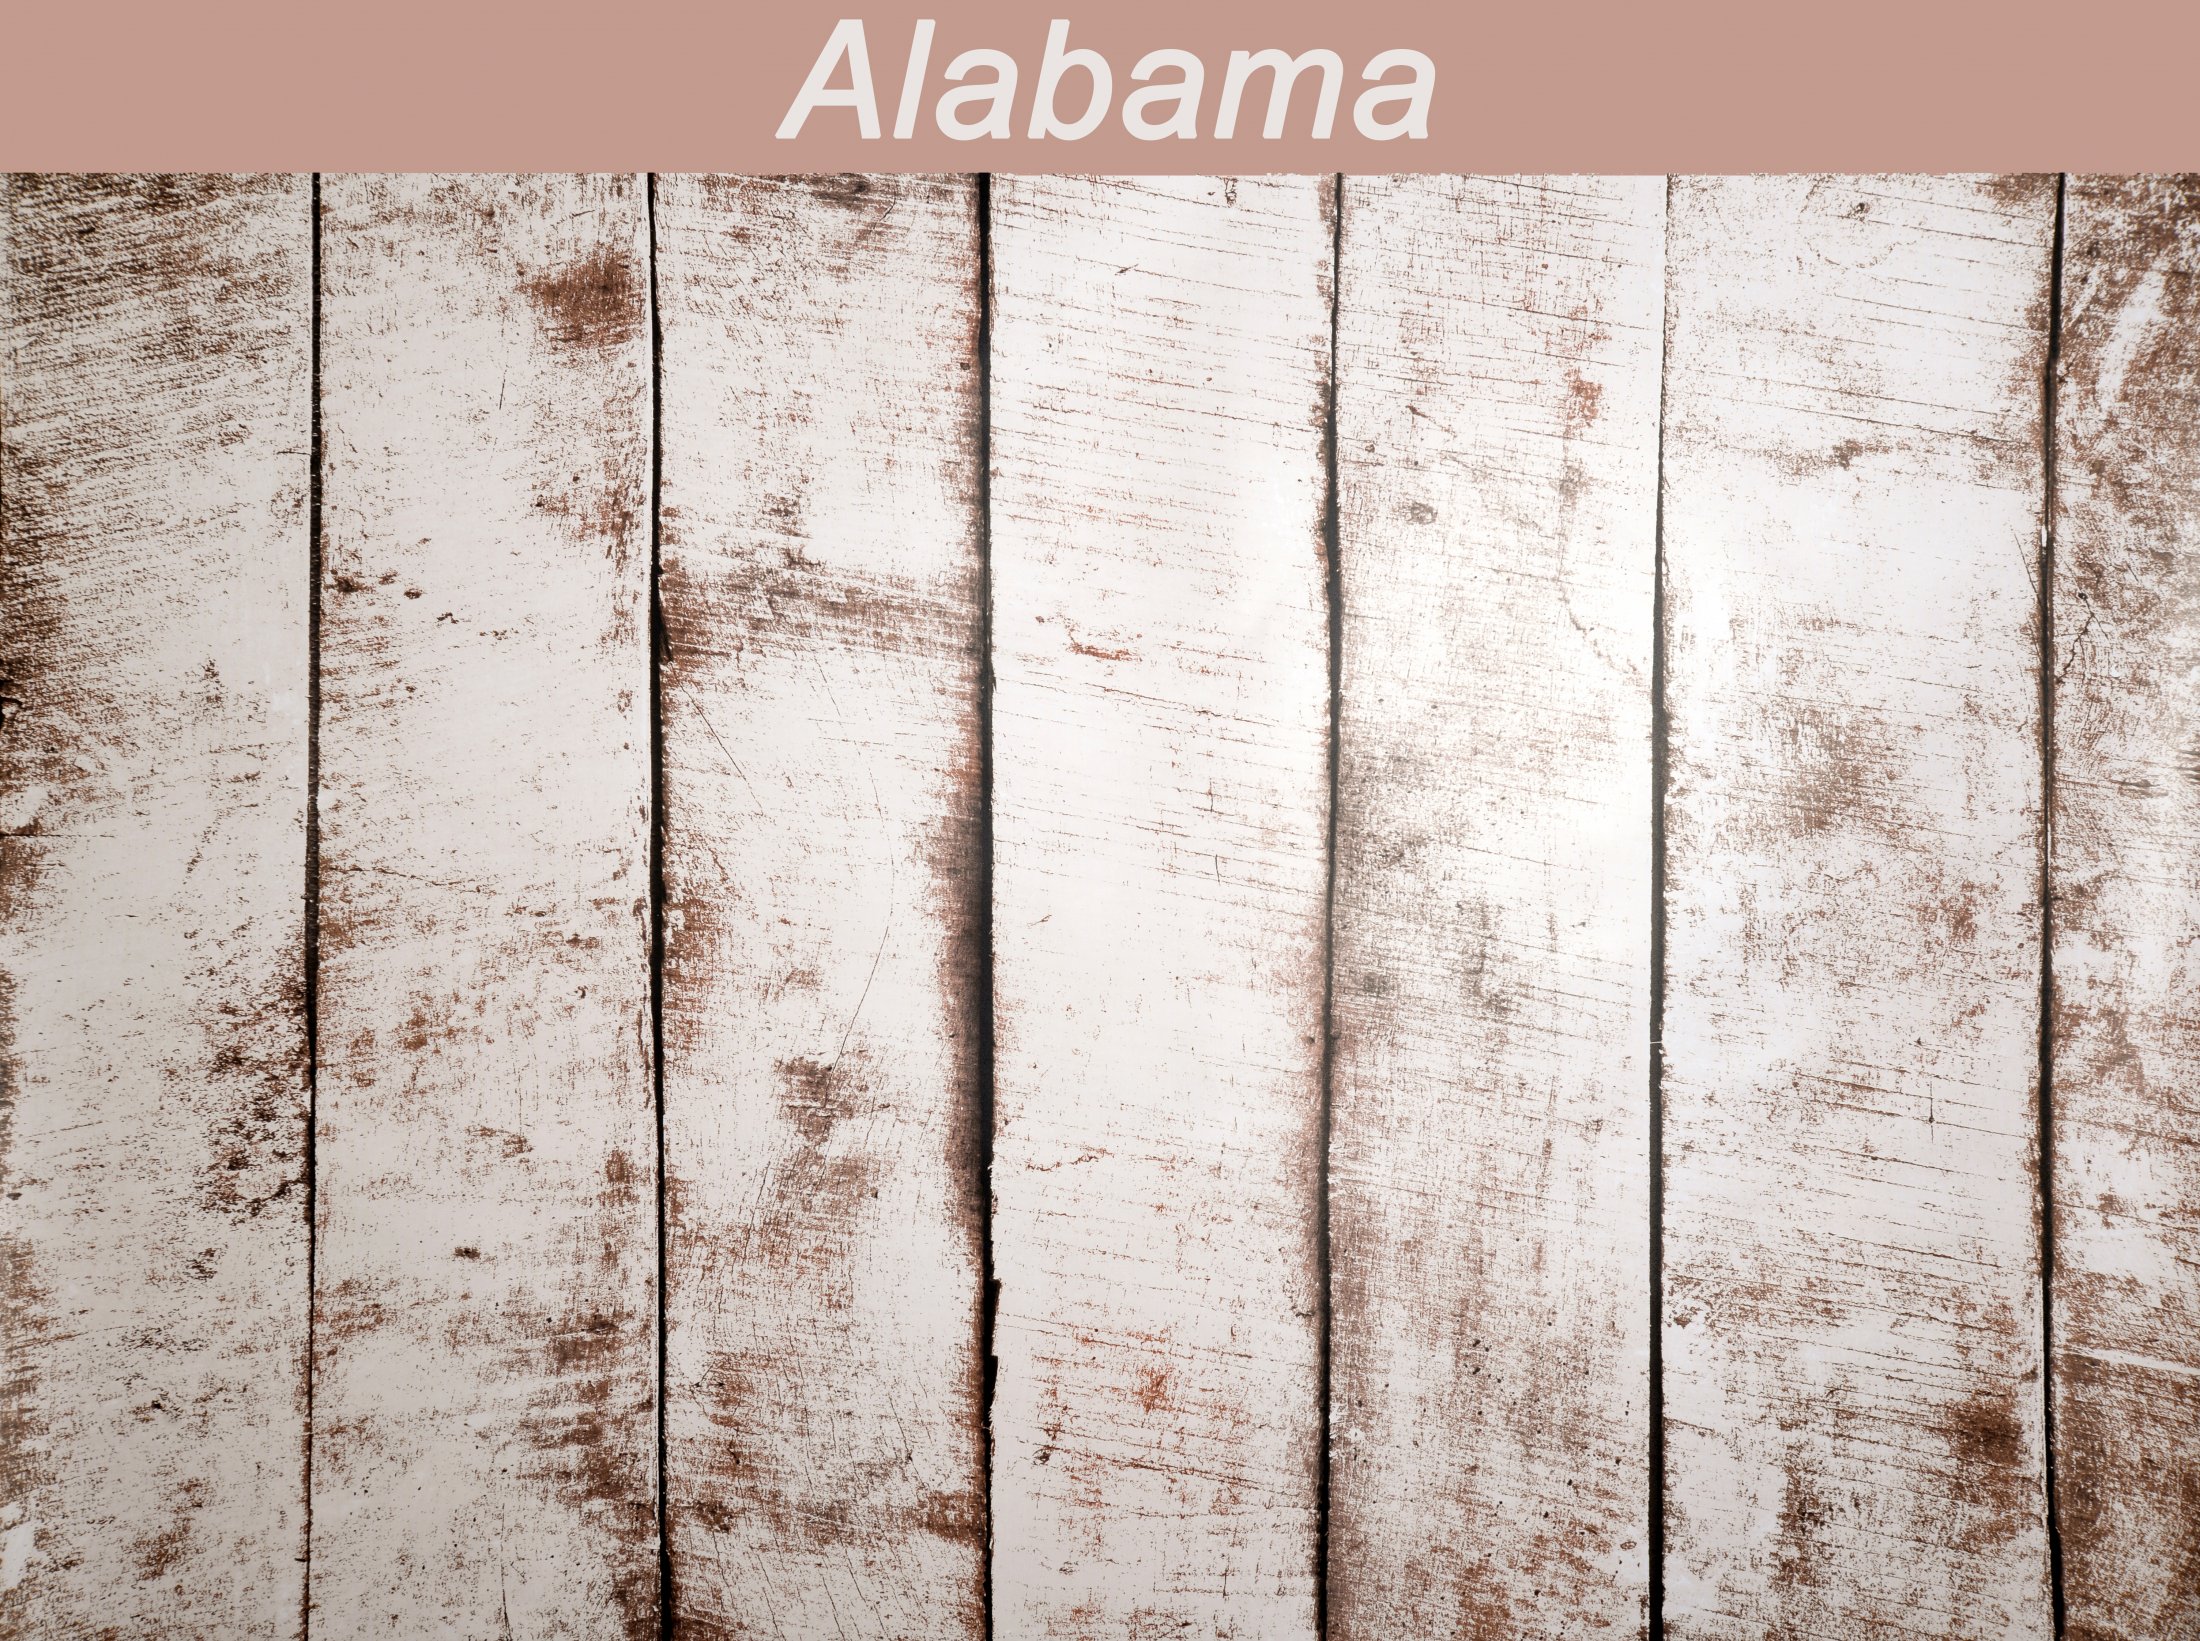 41 Alabama